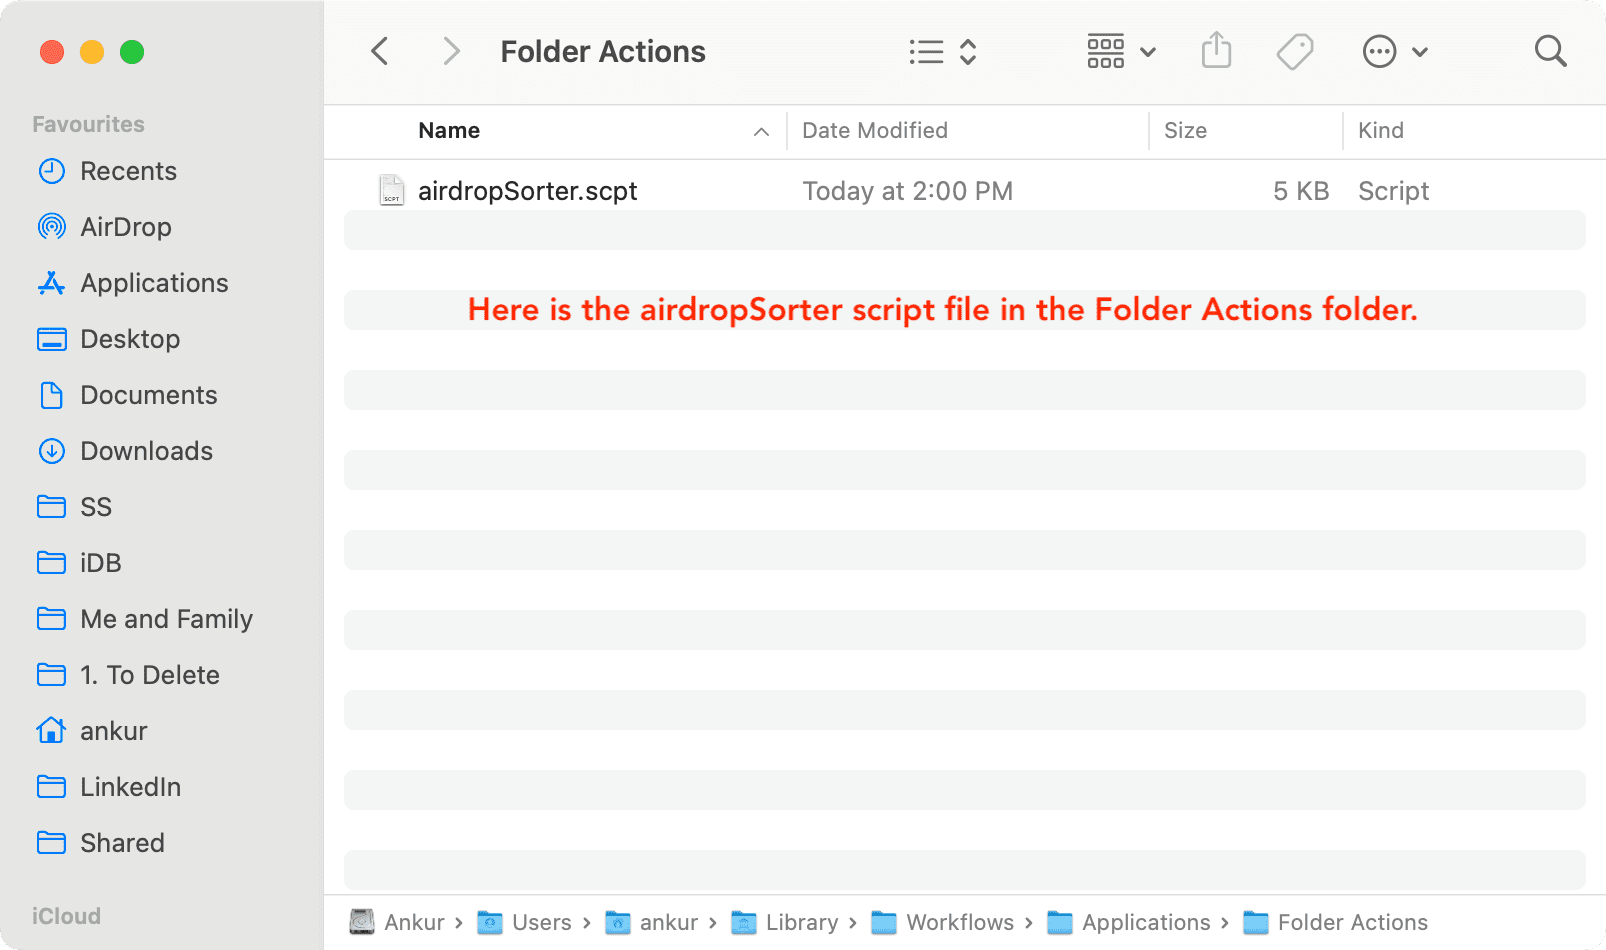 airdropSorter.scpt in Folder Actions folder